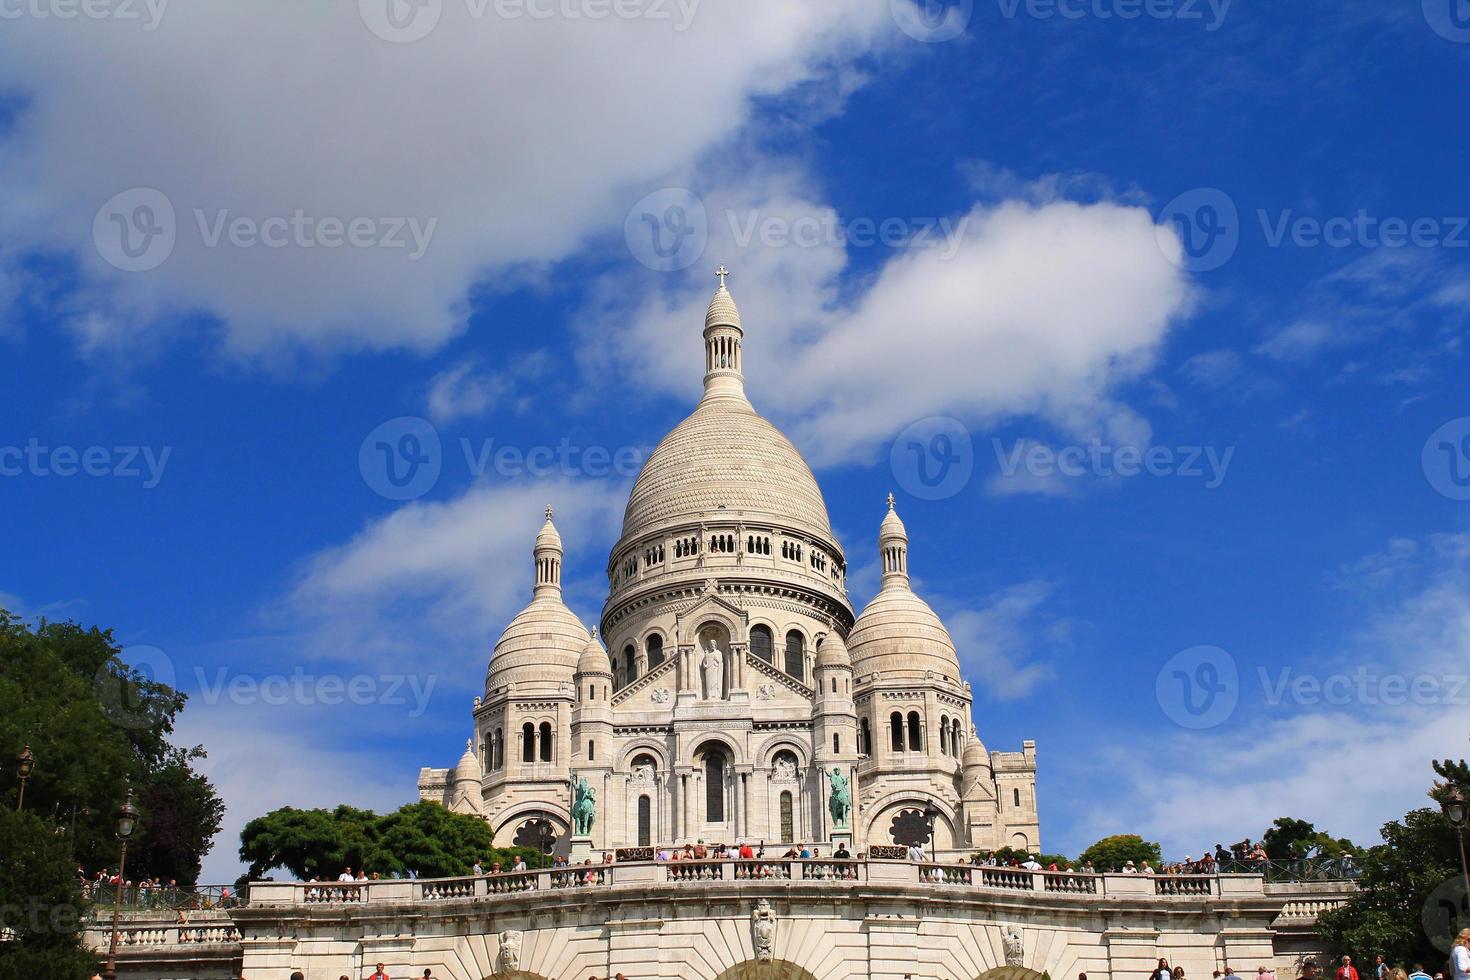 basilique du sacré coeur à paris, francia foto